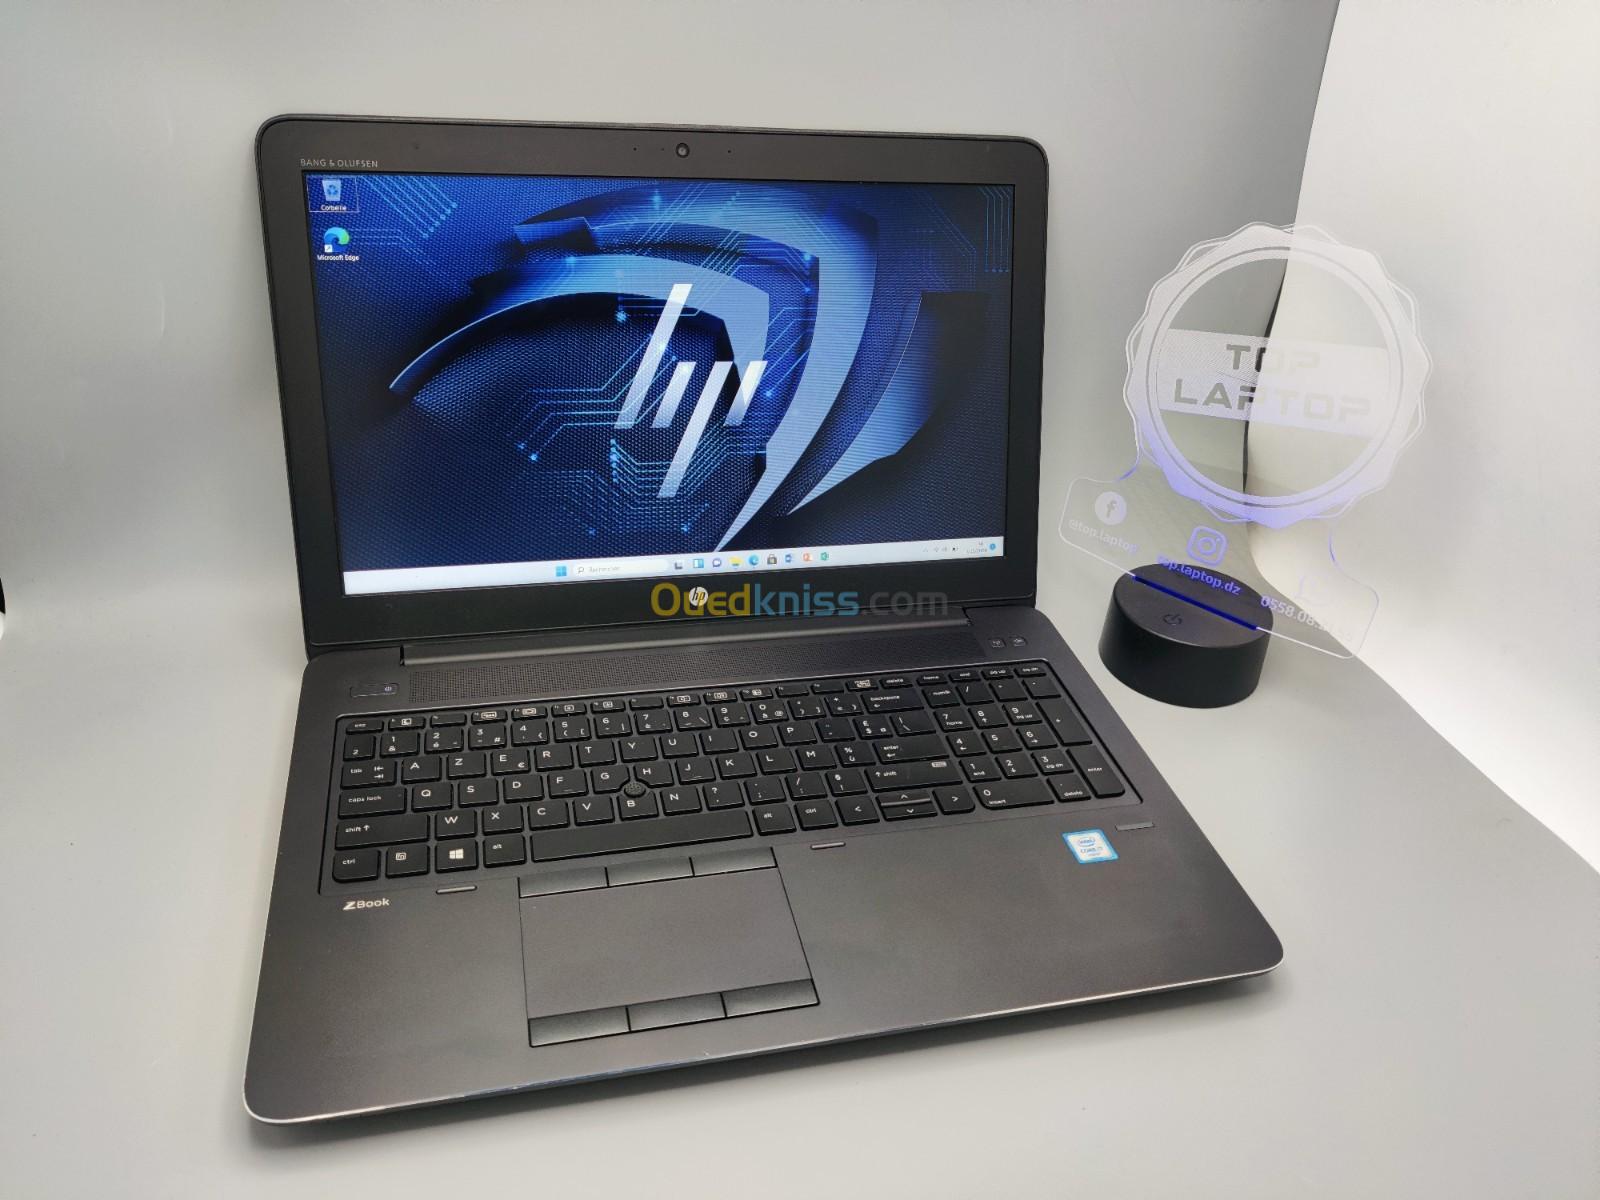 HP ZBOOK G3 Workstation i7 6700HQ NVIDIA QUADRO M2000 16GB 256GB SSD+500GB HDD 15.6" FULL HD 